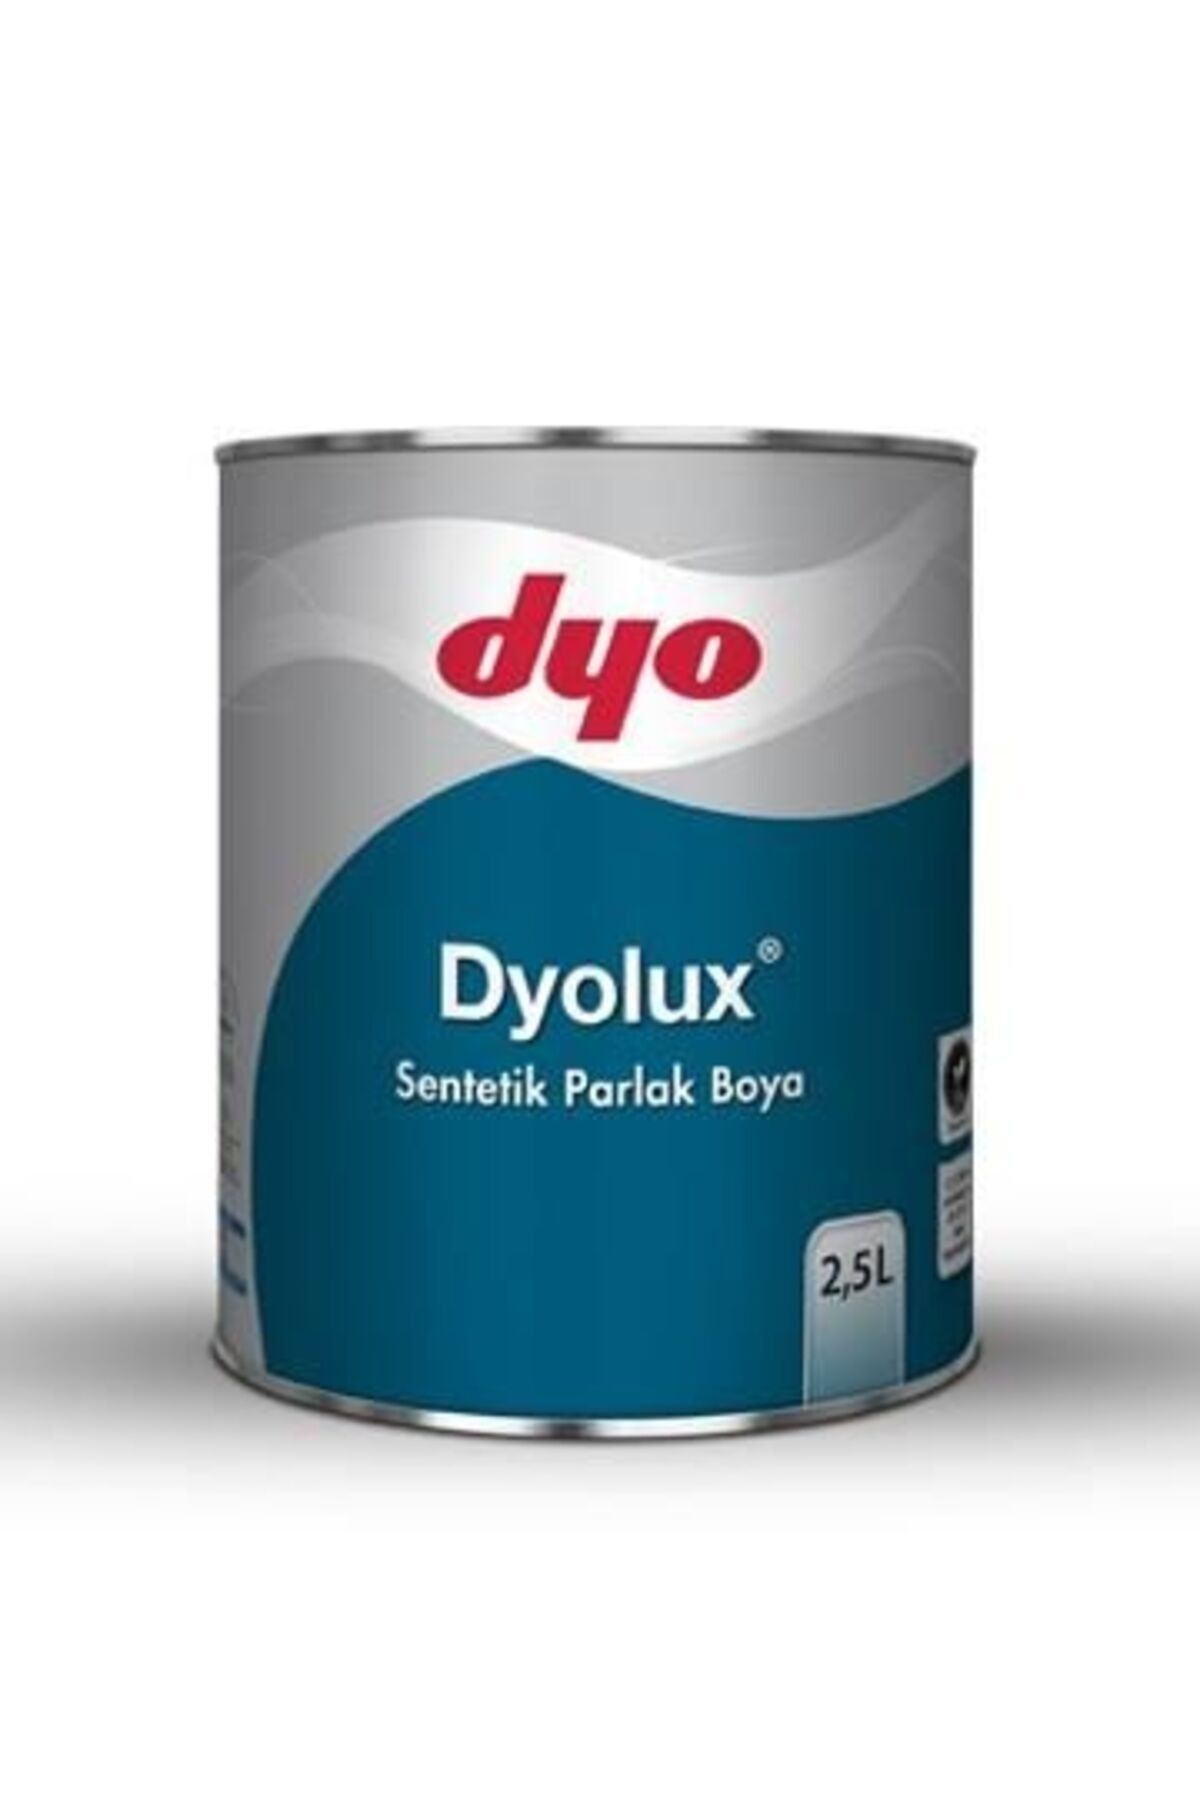 Dyo Dyolux Sentetik Parlak Boya Beyaz - 2.5lt